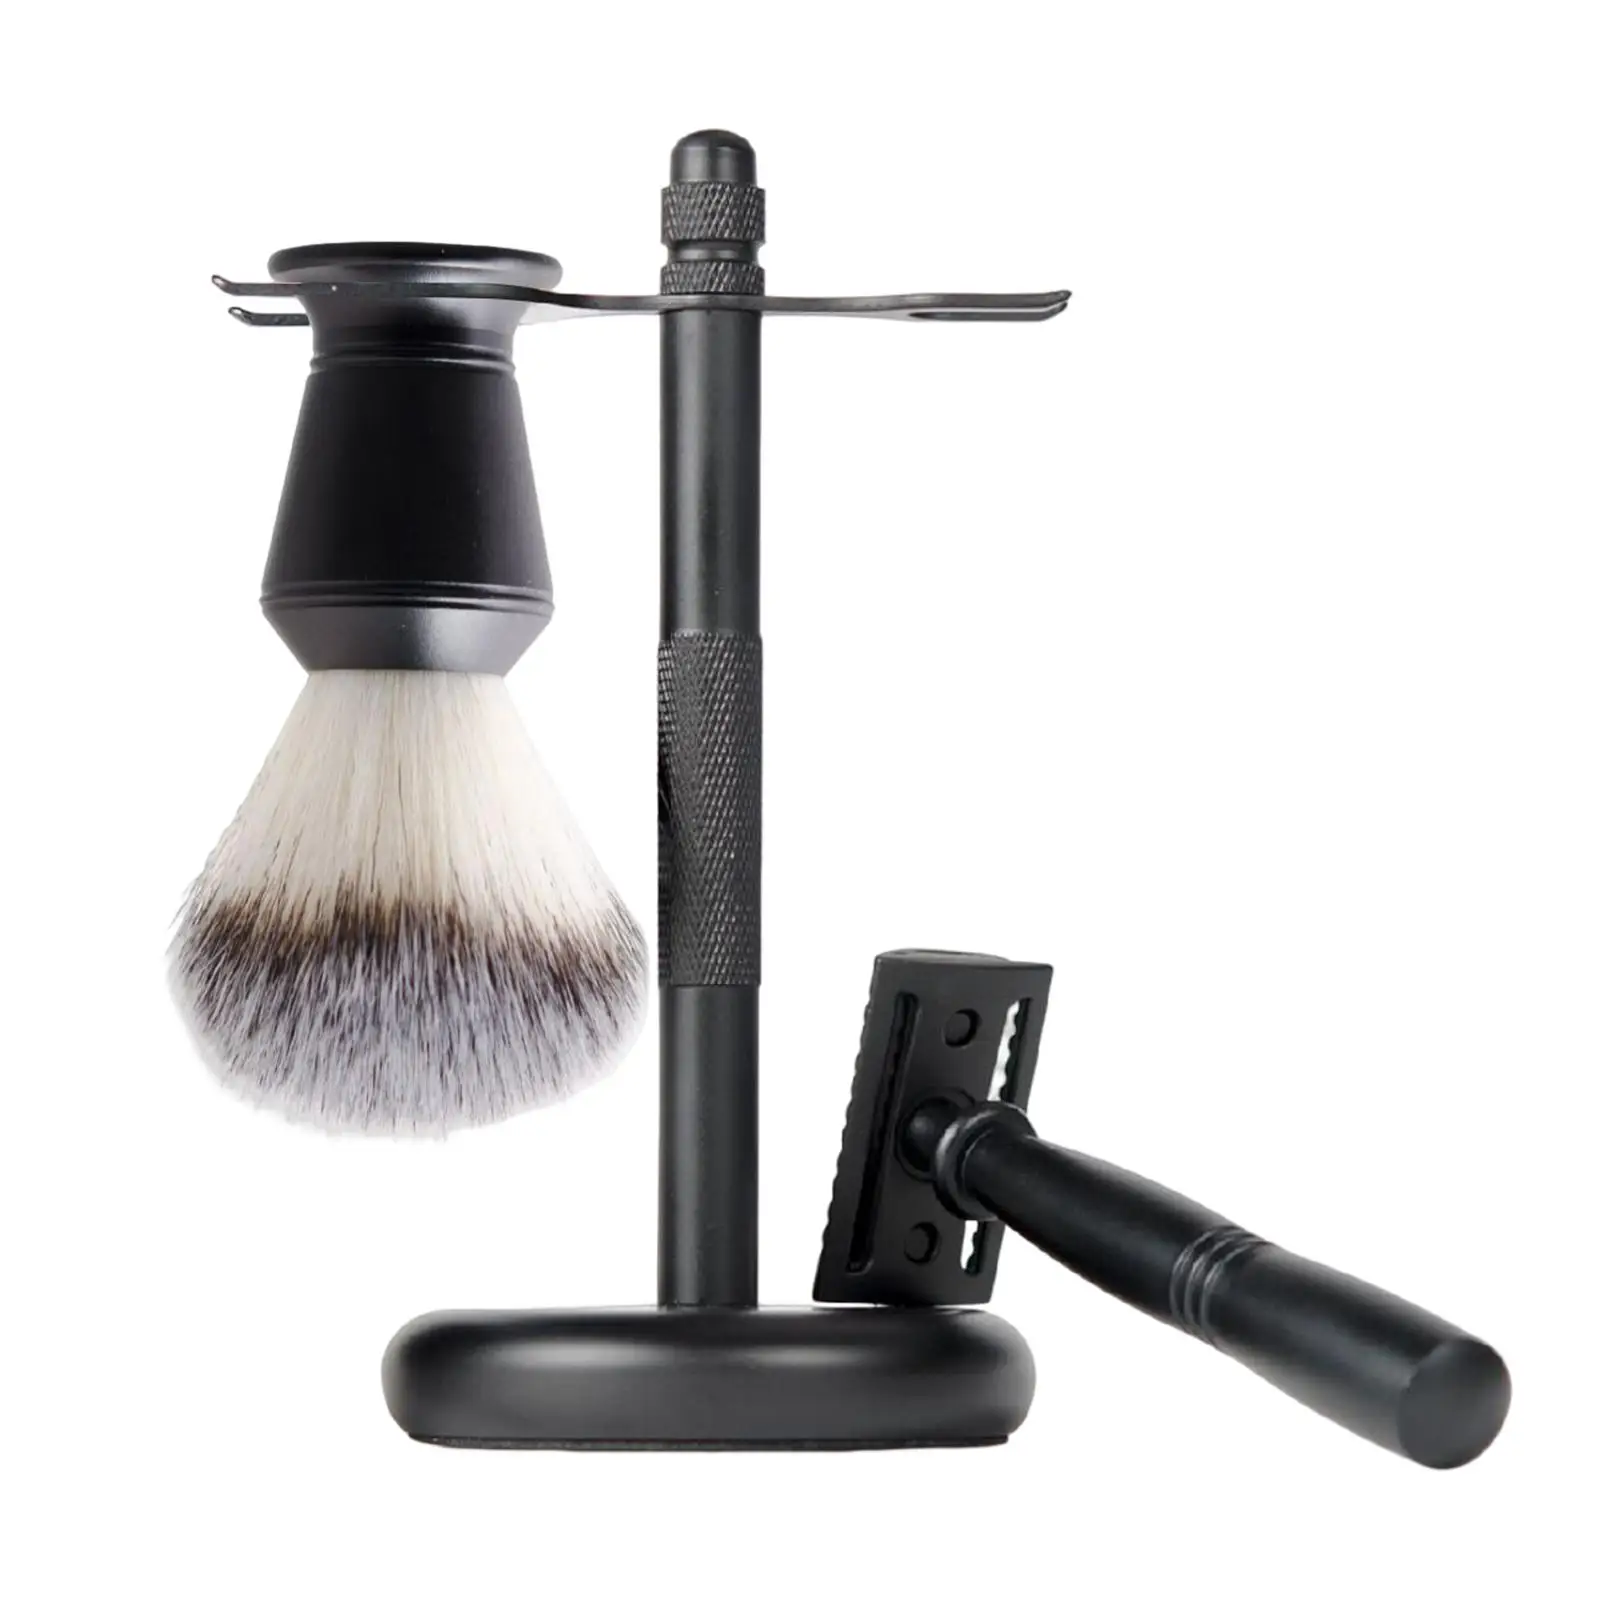 3x Shaving Kit for Men Black Shaving Stand Shaving Cleaning Tool Includes Edge Razor, Holder, Shaving Brush Shave Accessory